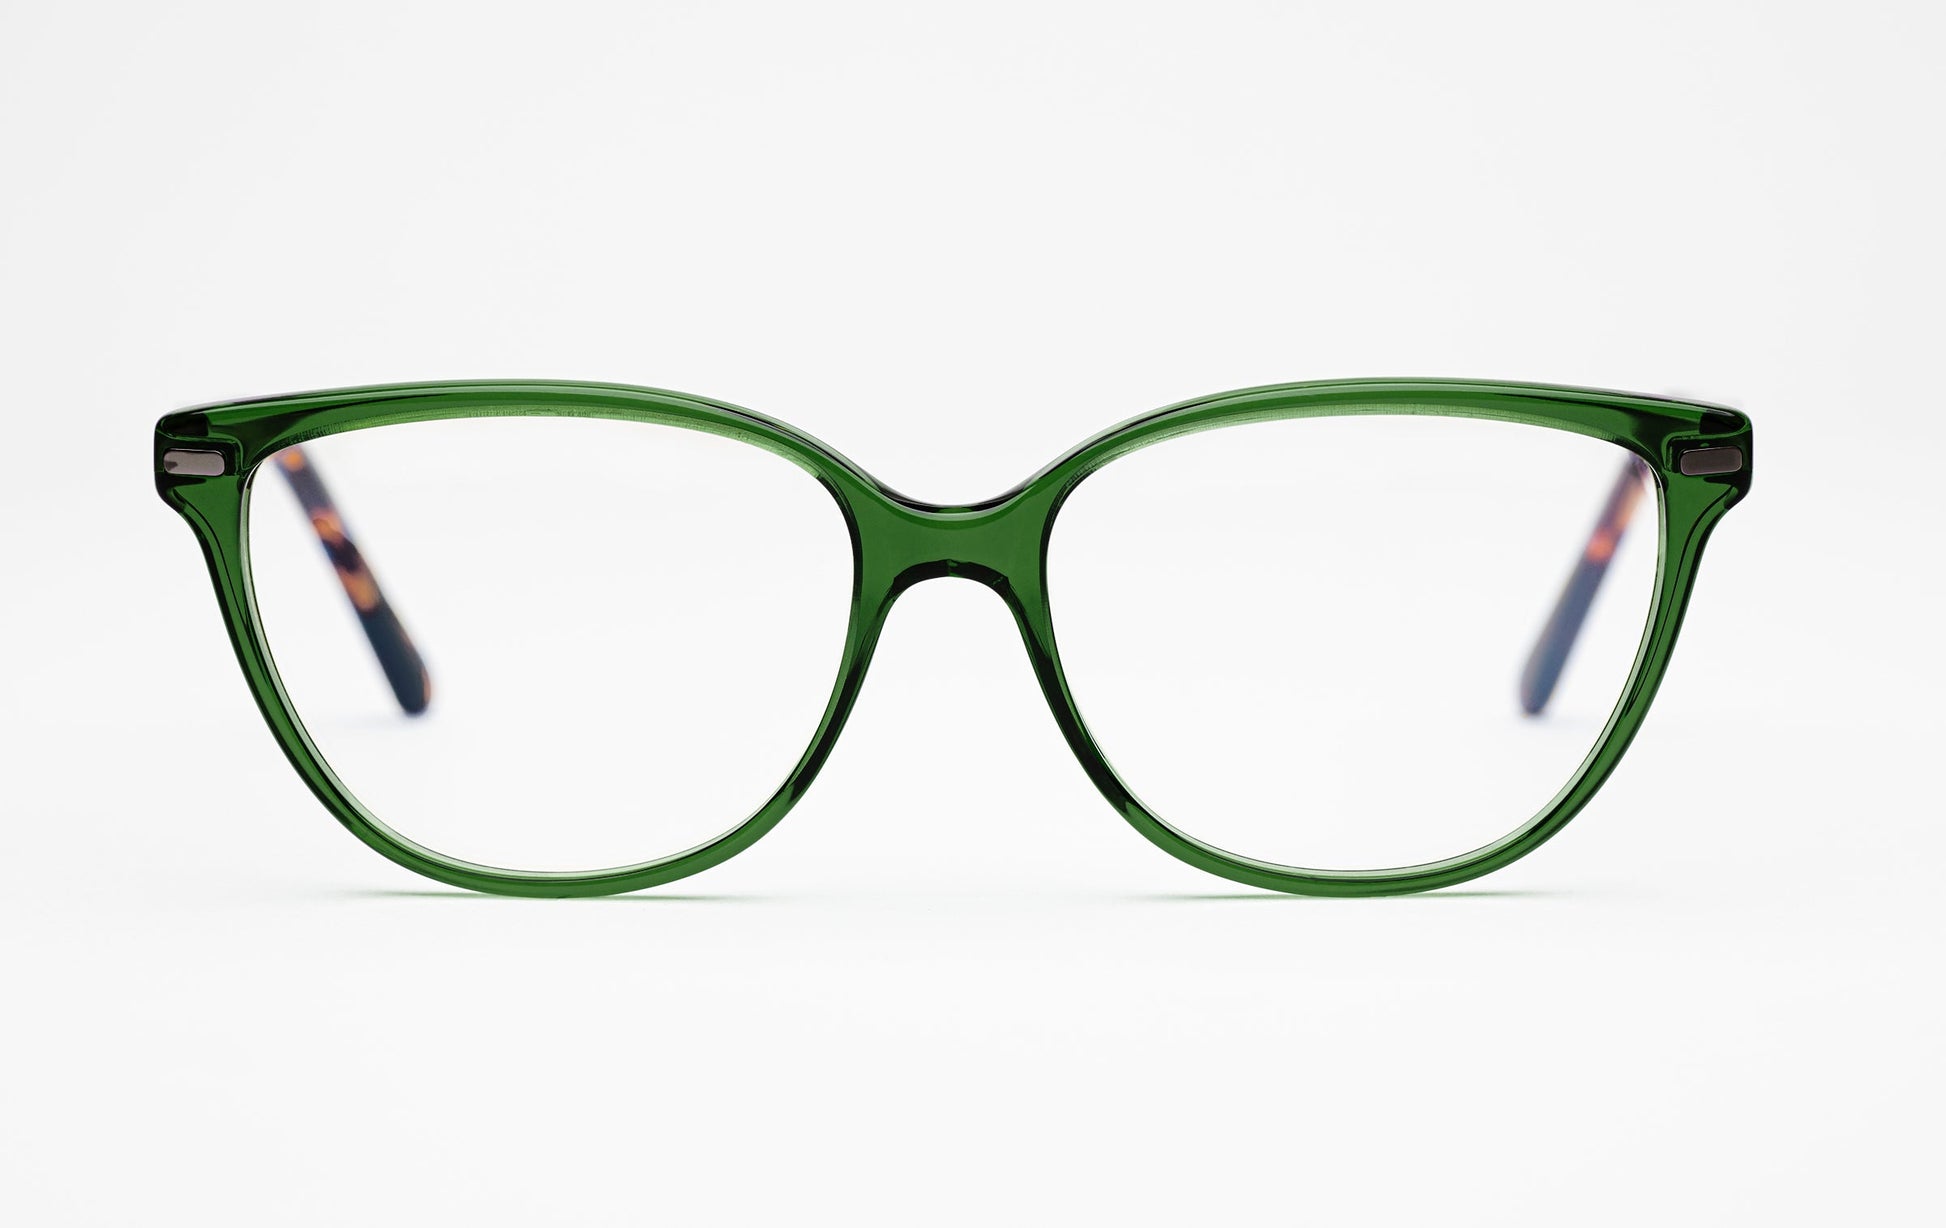 The Humanist 3 | Oval Cat Eye Glasses - Designer Prescription Eyeglasses – Green Acetate Frames